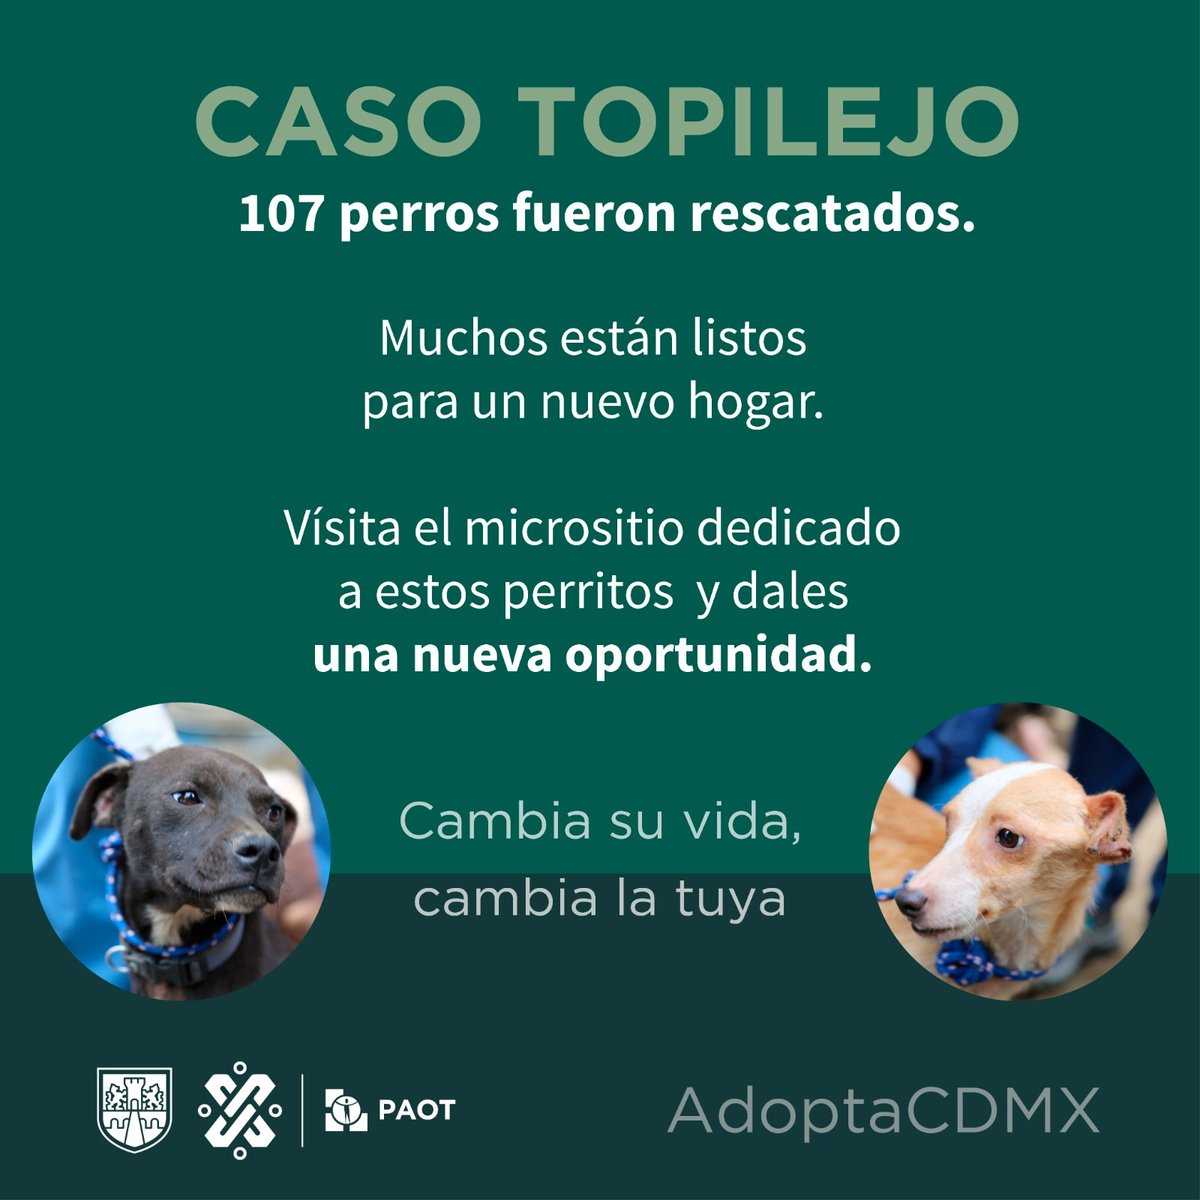 💭¿Recuerdas el #casoTopilejo? 💔 Aquí 👉 bit.ly/CasoTopilejo podrás encontrar a los perros que aún buscan una 2da oportunidad, un 🏠 donde les brinden amor, bienestar y largos paseos. 🐾¡No lo pienses más! 🔁¿Nos ayudas a compartir? #CambiaSuVida #CambiaLaTuya